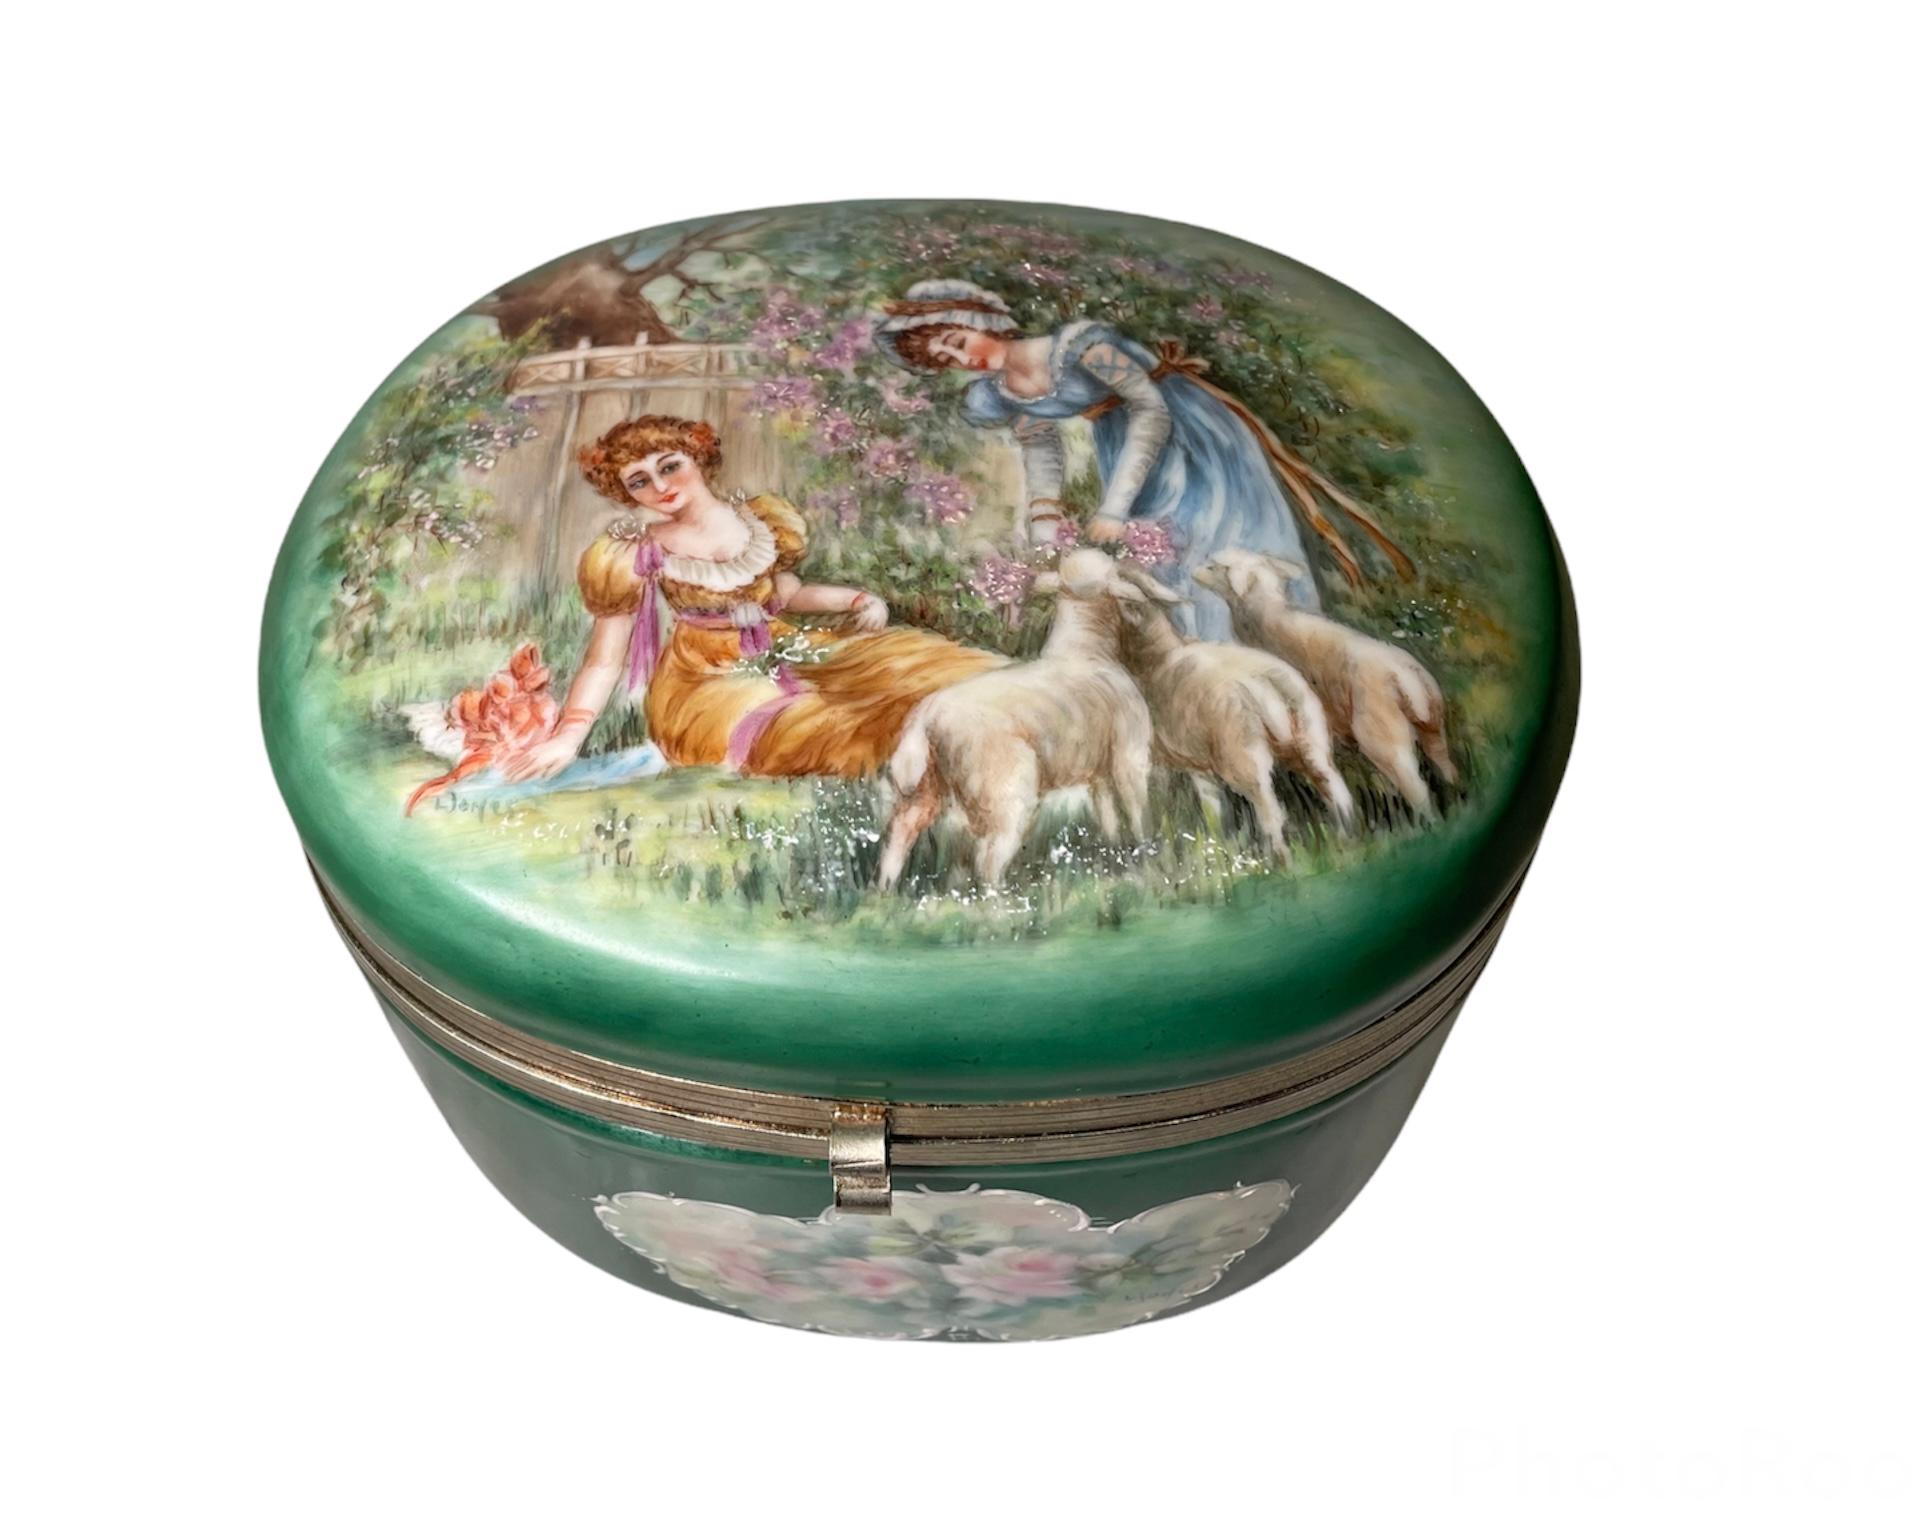 Il s'agit d'un grand coffret de toilette ovale en porcelaine peint à la main. Il représente une scène de deux jeunes femmes victoriennes dans un jardin. L'une des femmes est assise dans l'herbe verte et observe l'autre qui tient des fleurs dans ses